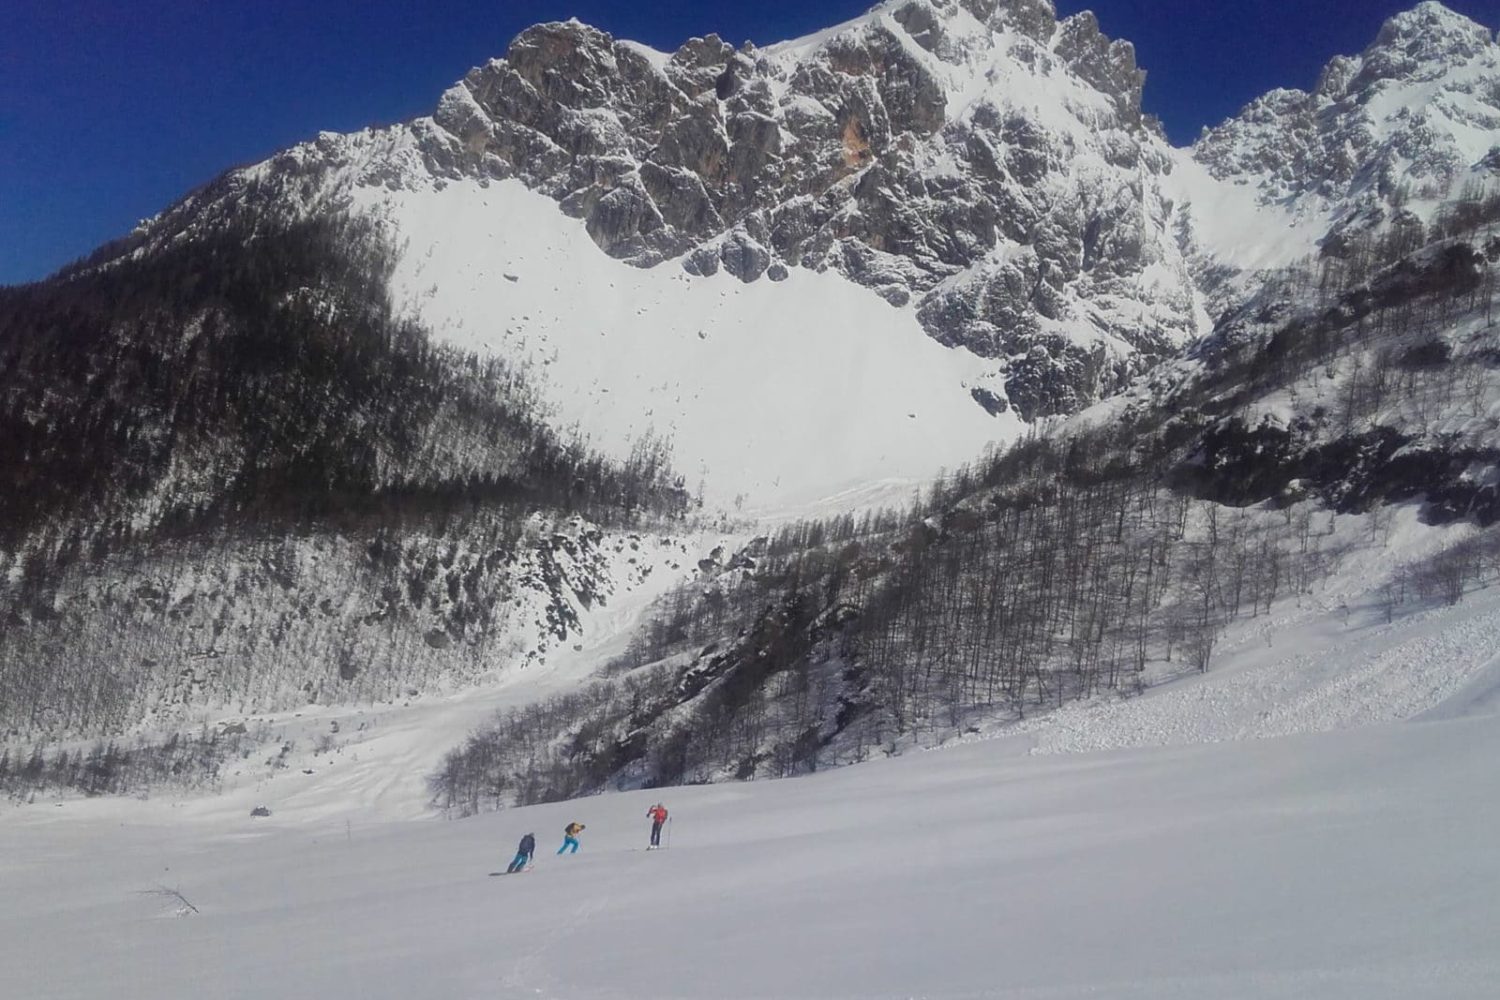 Ski touring in alps